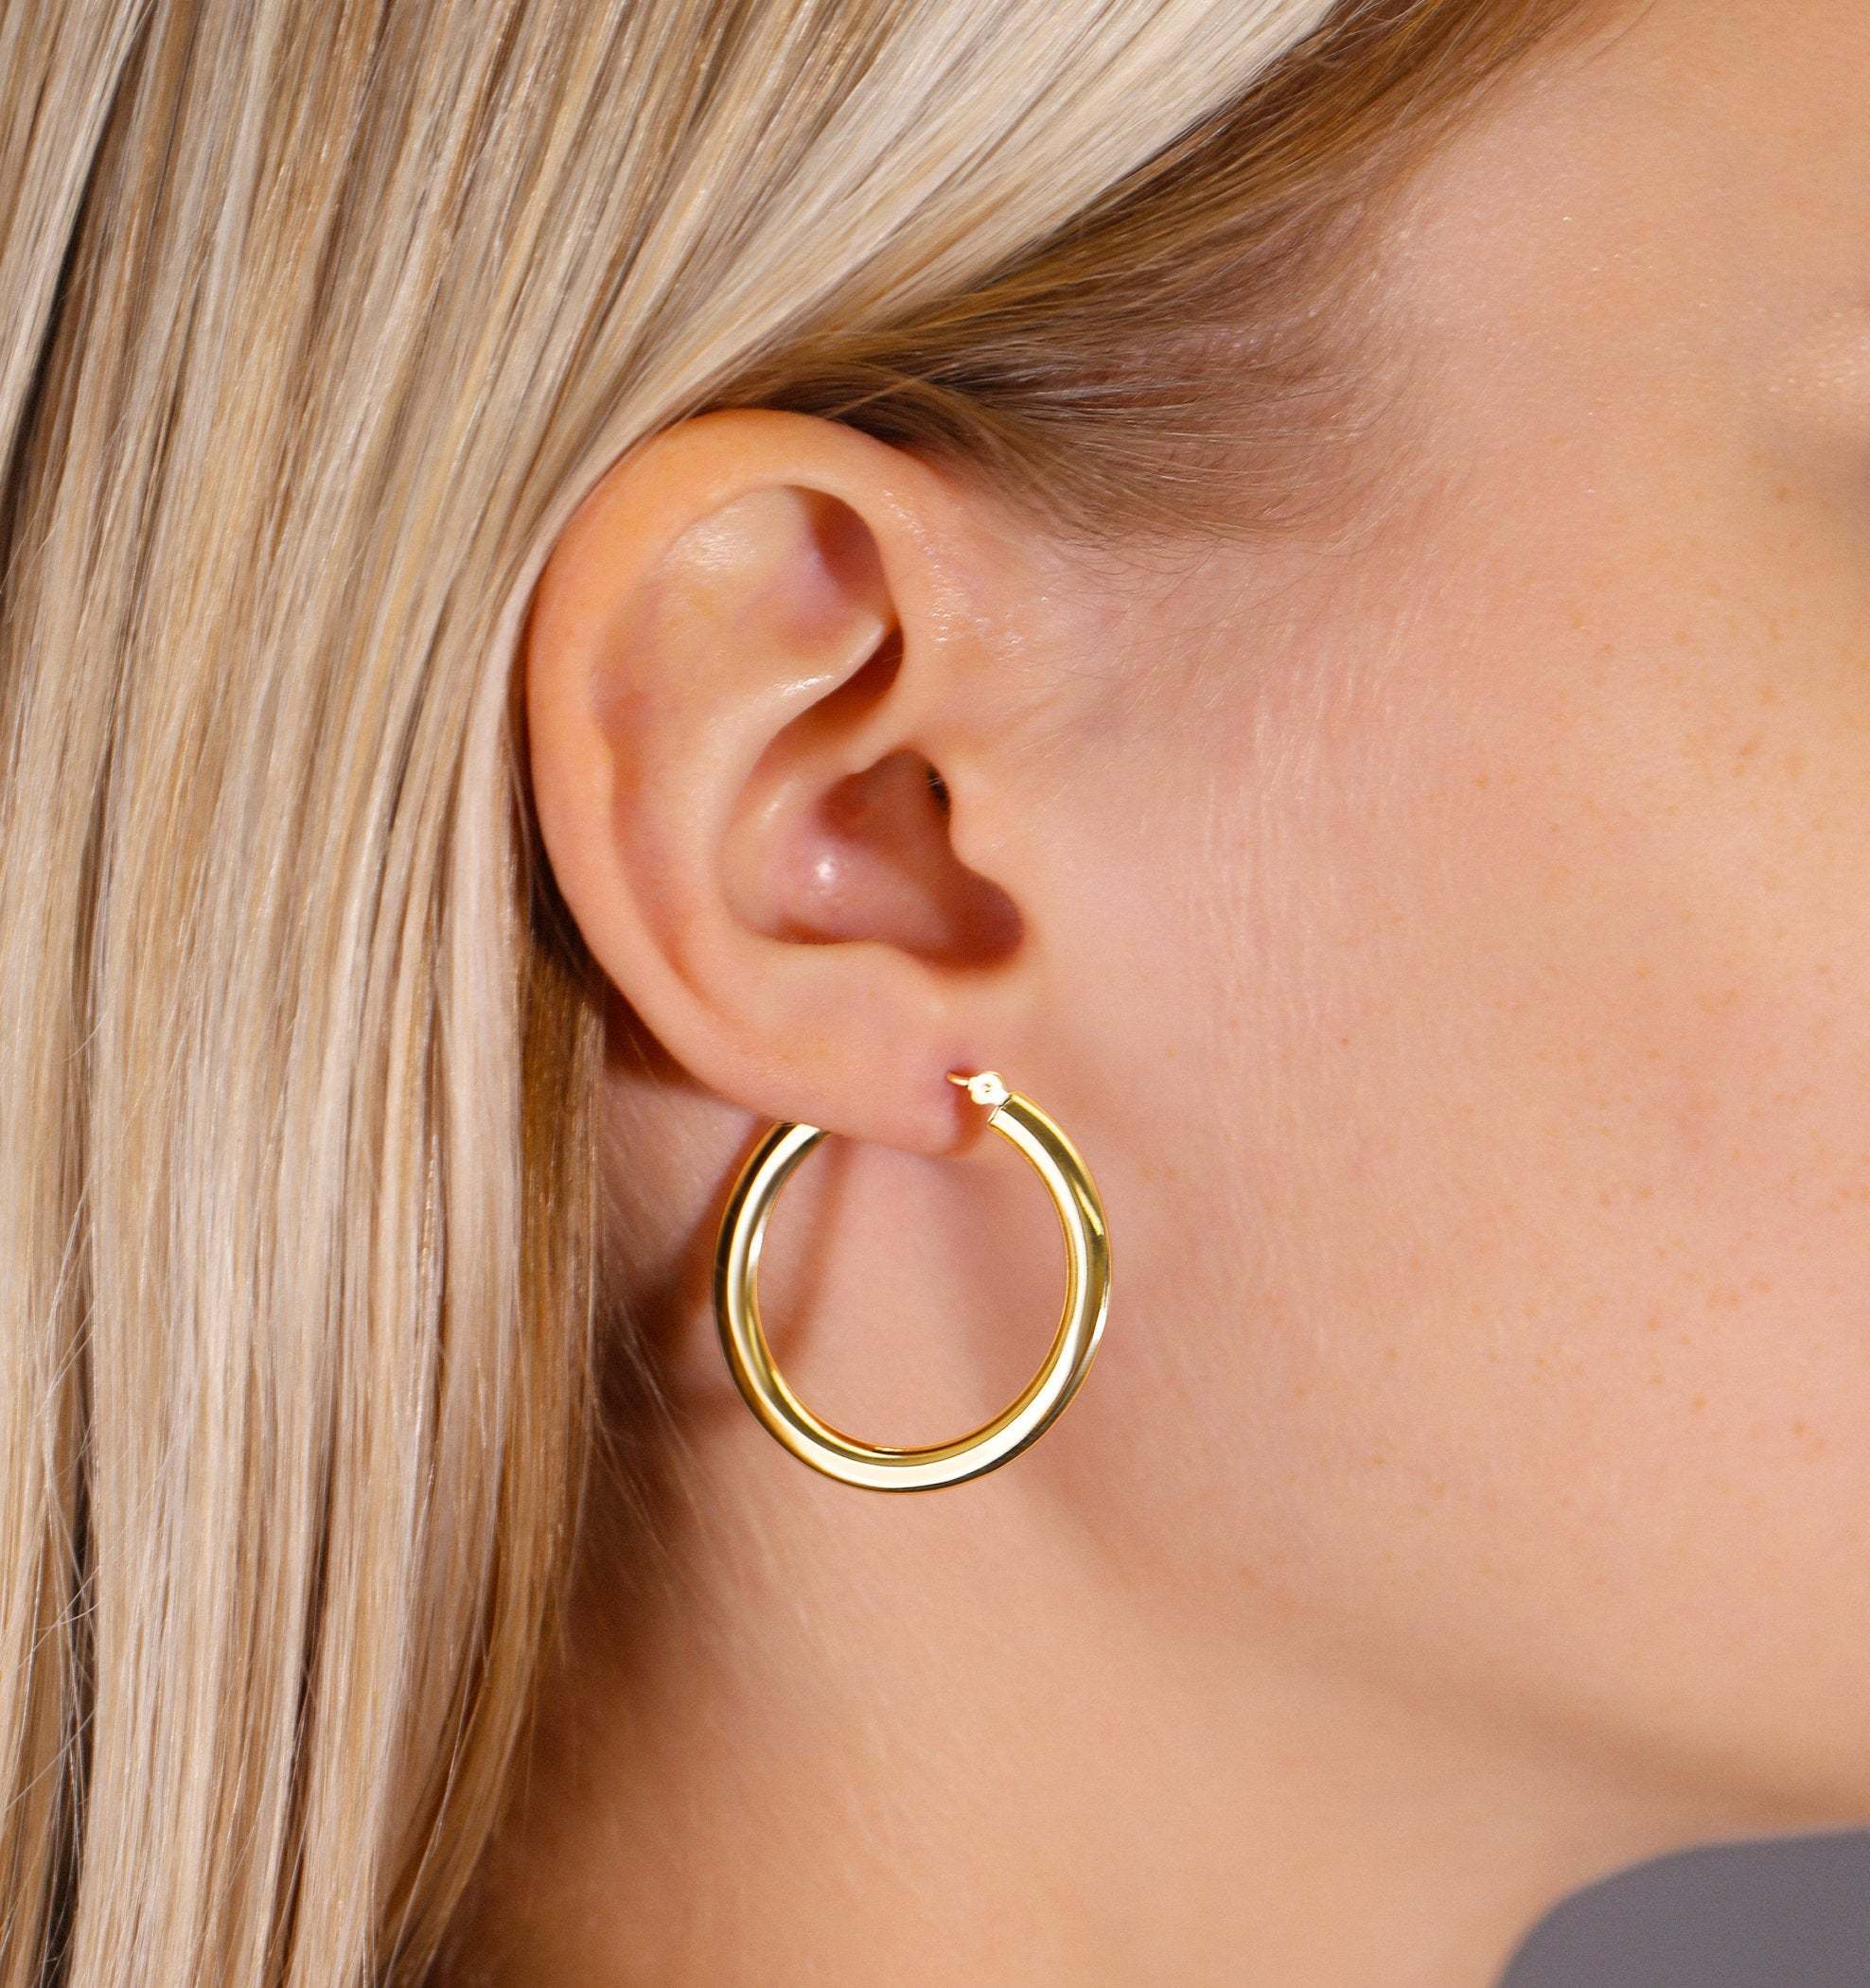 Buy Small Gold Hoop Earrings 1 Inch Chunky Hoop Earrings 30mm Online in  India  Etsy